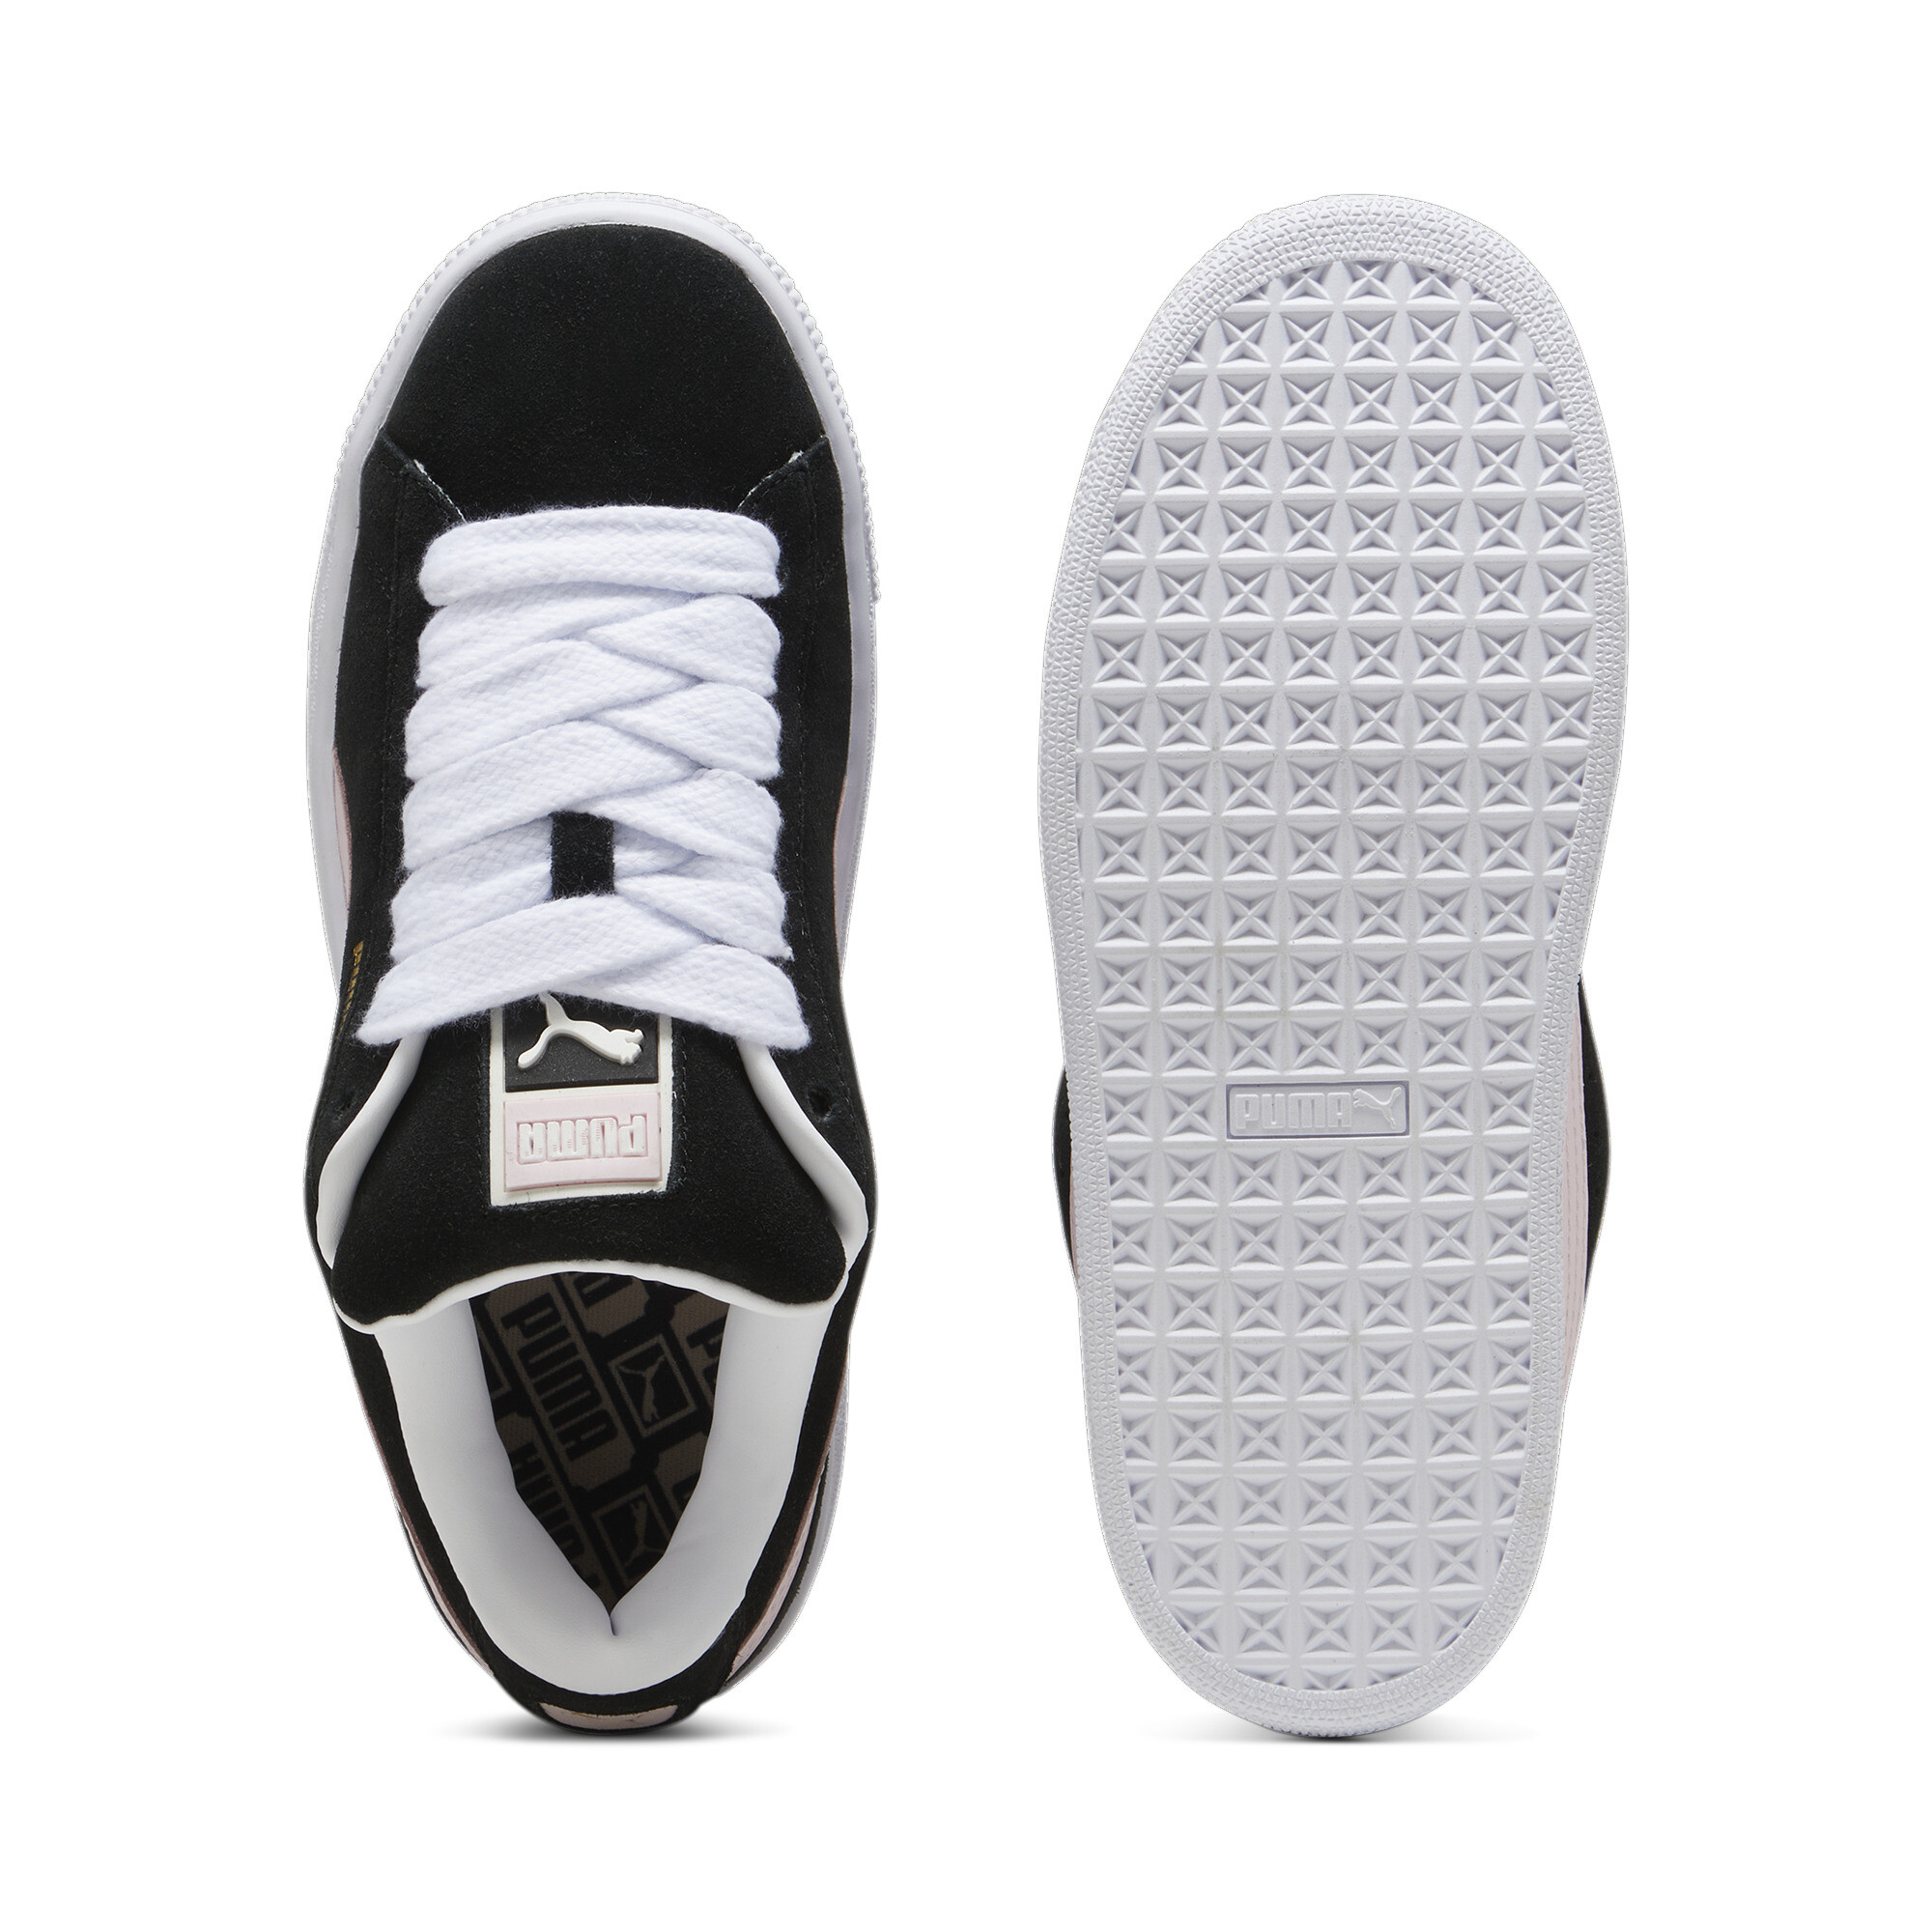 Puma Suede XL Sneakers Unisex, Black, Size 39, Shoes